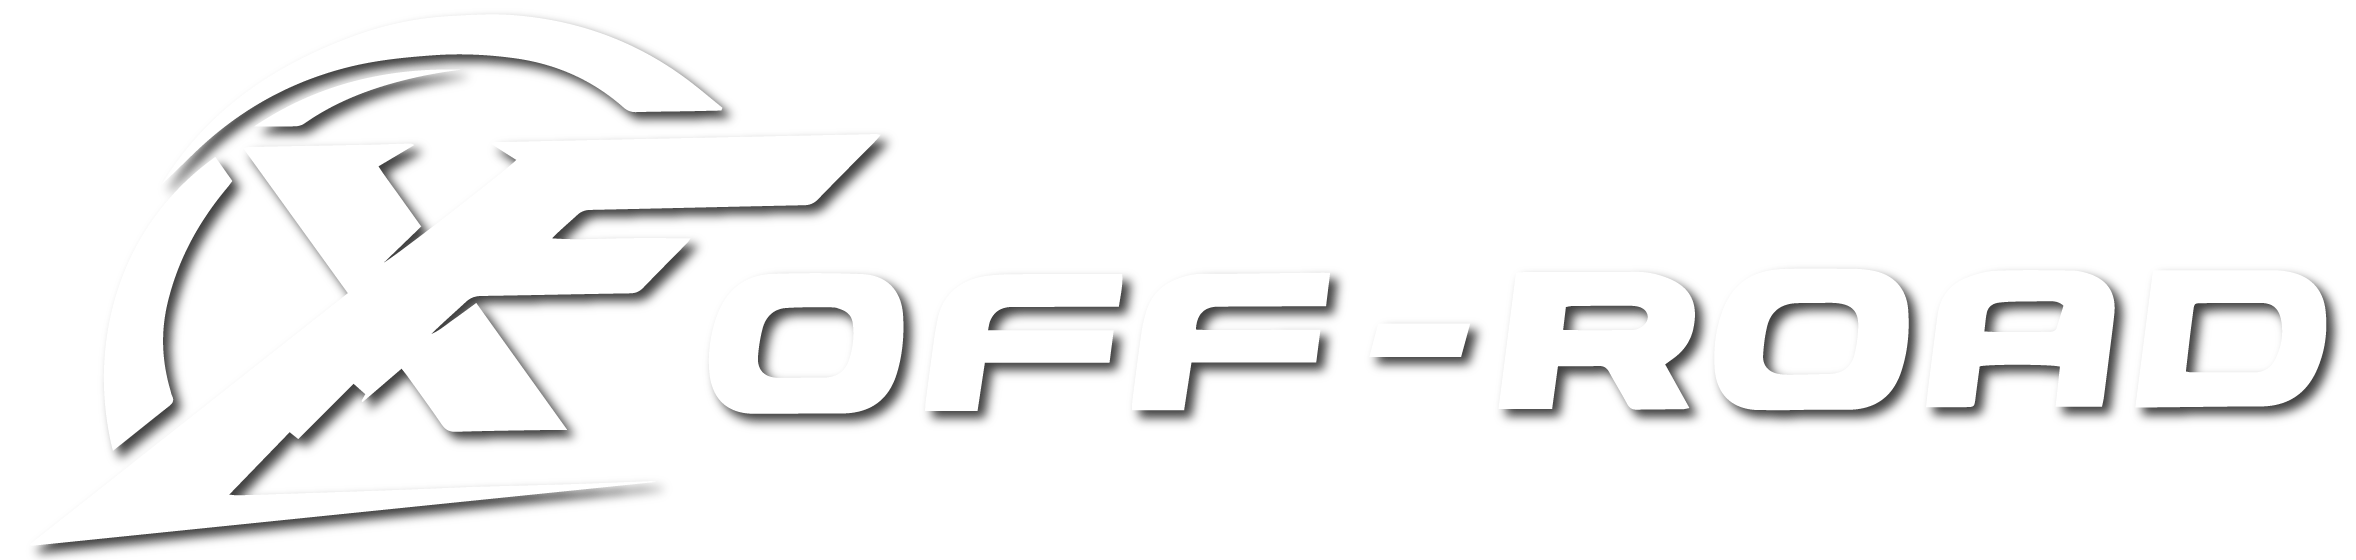 XF Off-Road Logo White